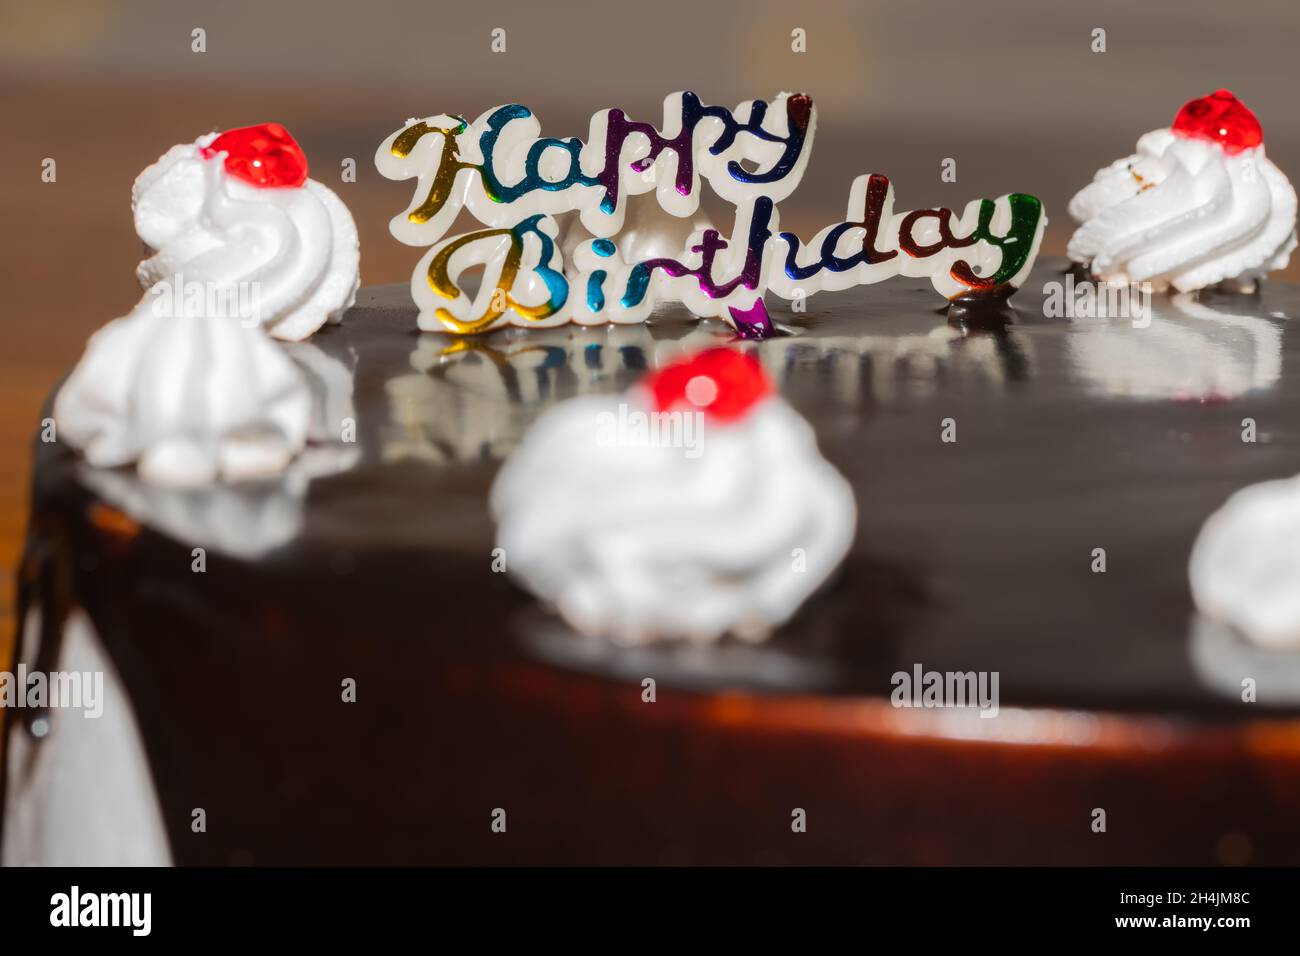 Nahaufnahme eines Schokoladenkuchens mit frischer weißer Creme und Kirsche Belag und Happy Birthday darauf geschrieben Stockfoto